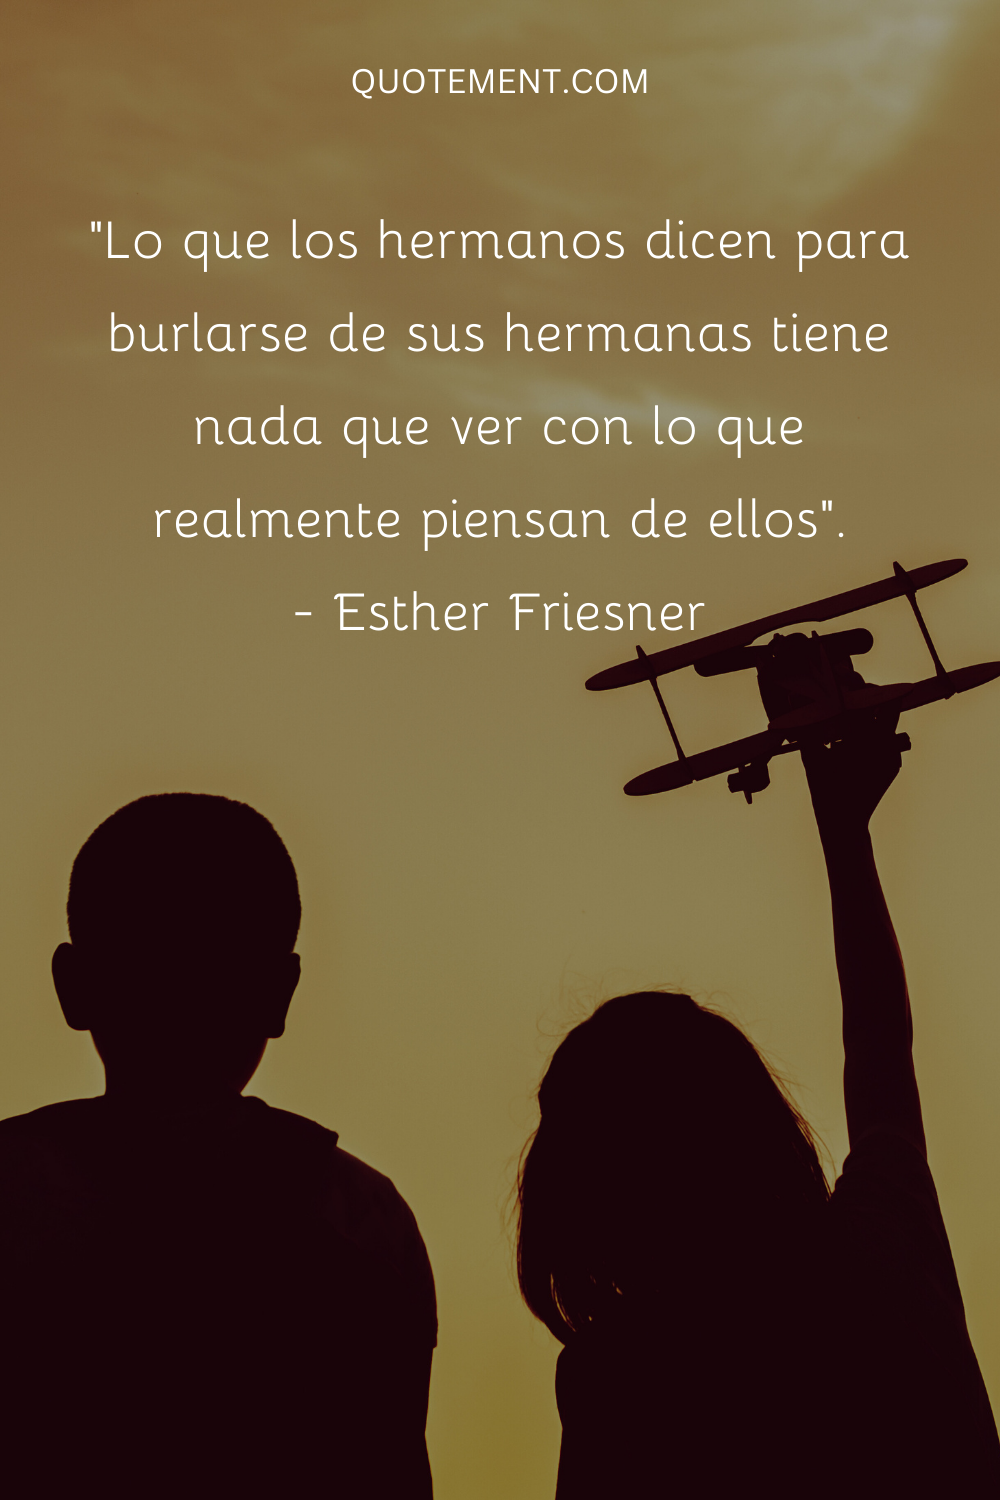 "Lo que los hermanos dicen para burlarse de sus hermanas no tiene nada que ver con lo que realmente piensan de ellas". - Esther Friesner